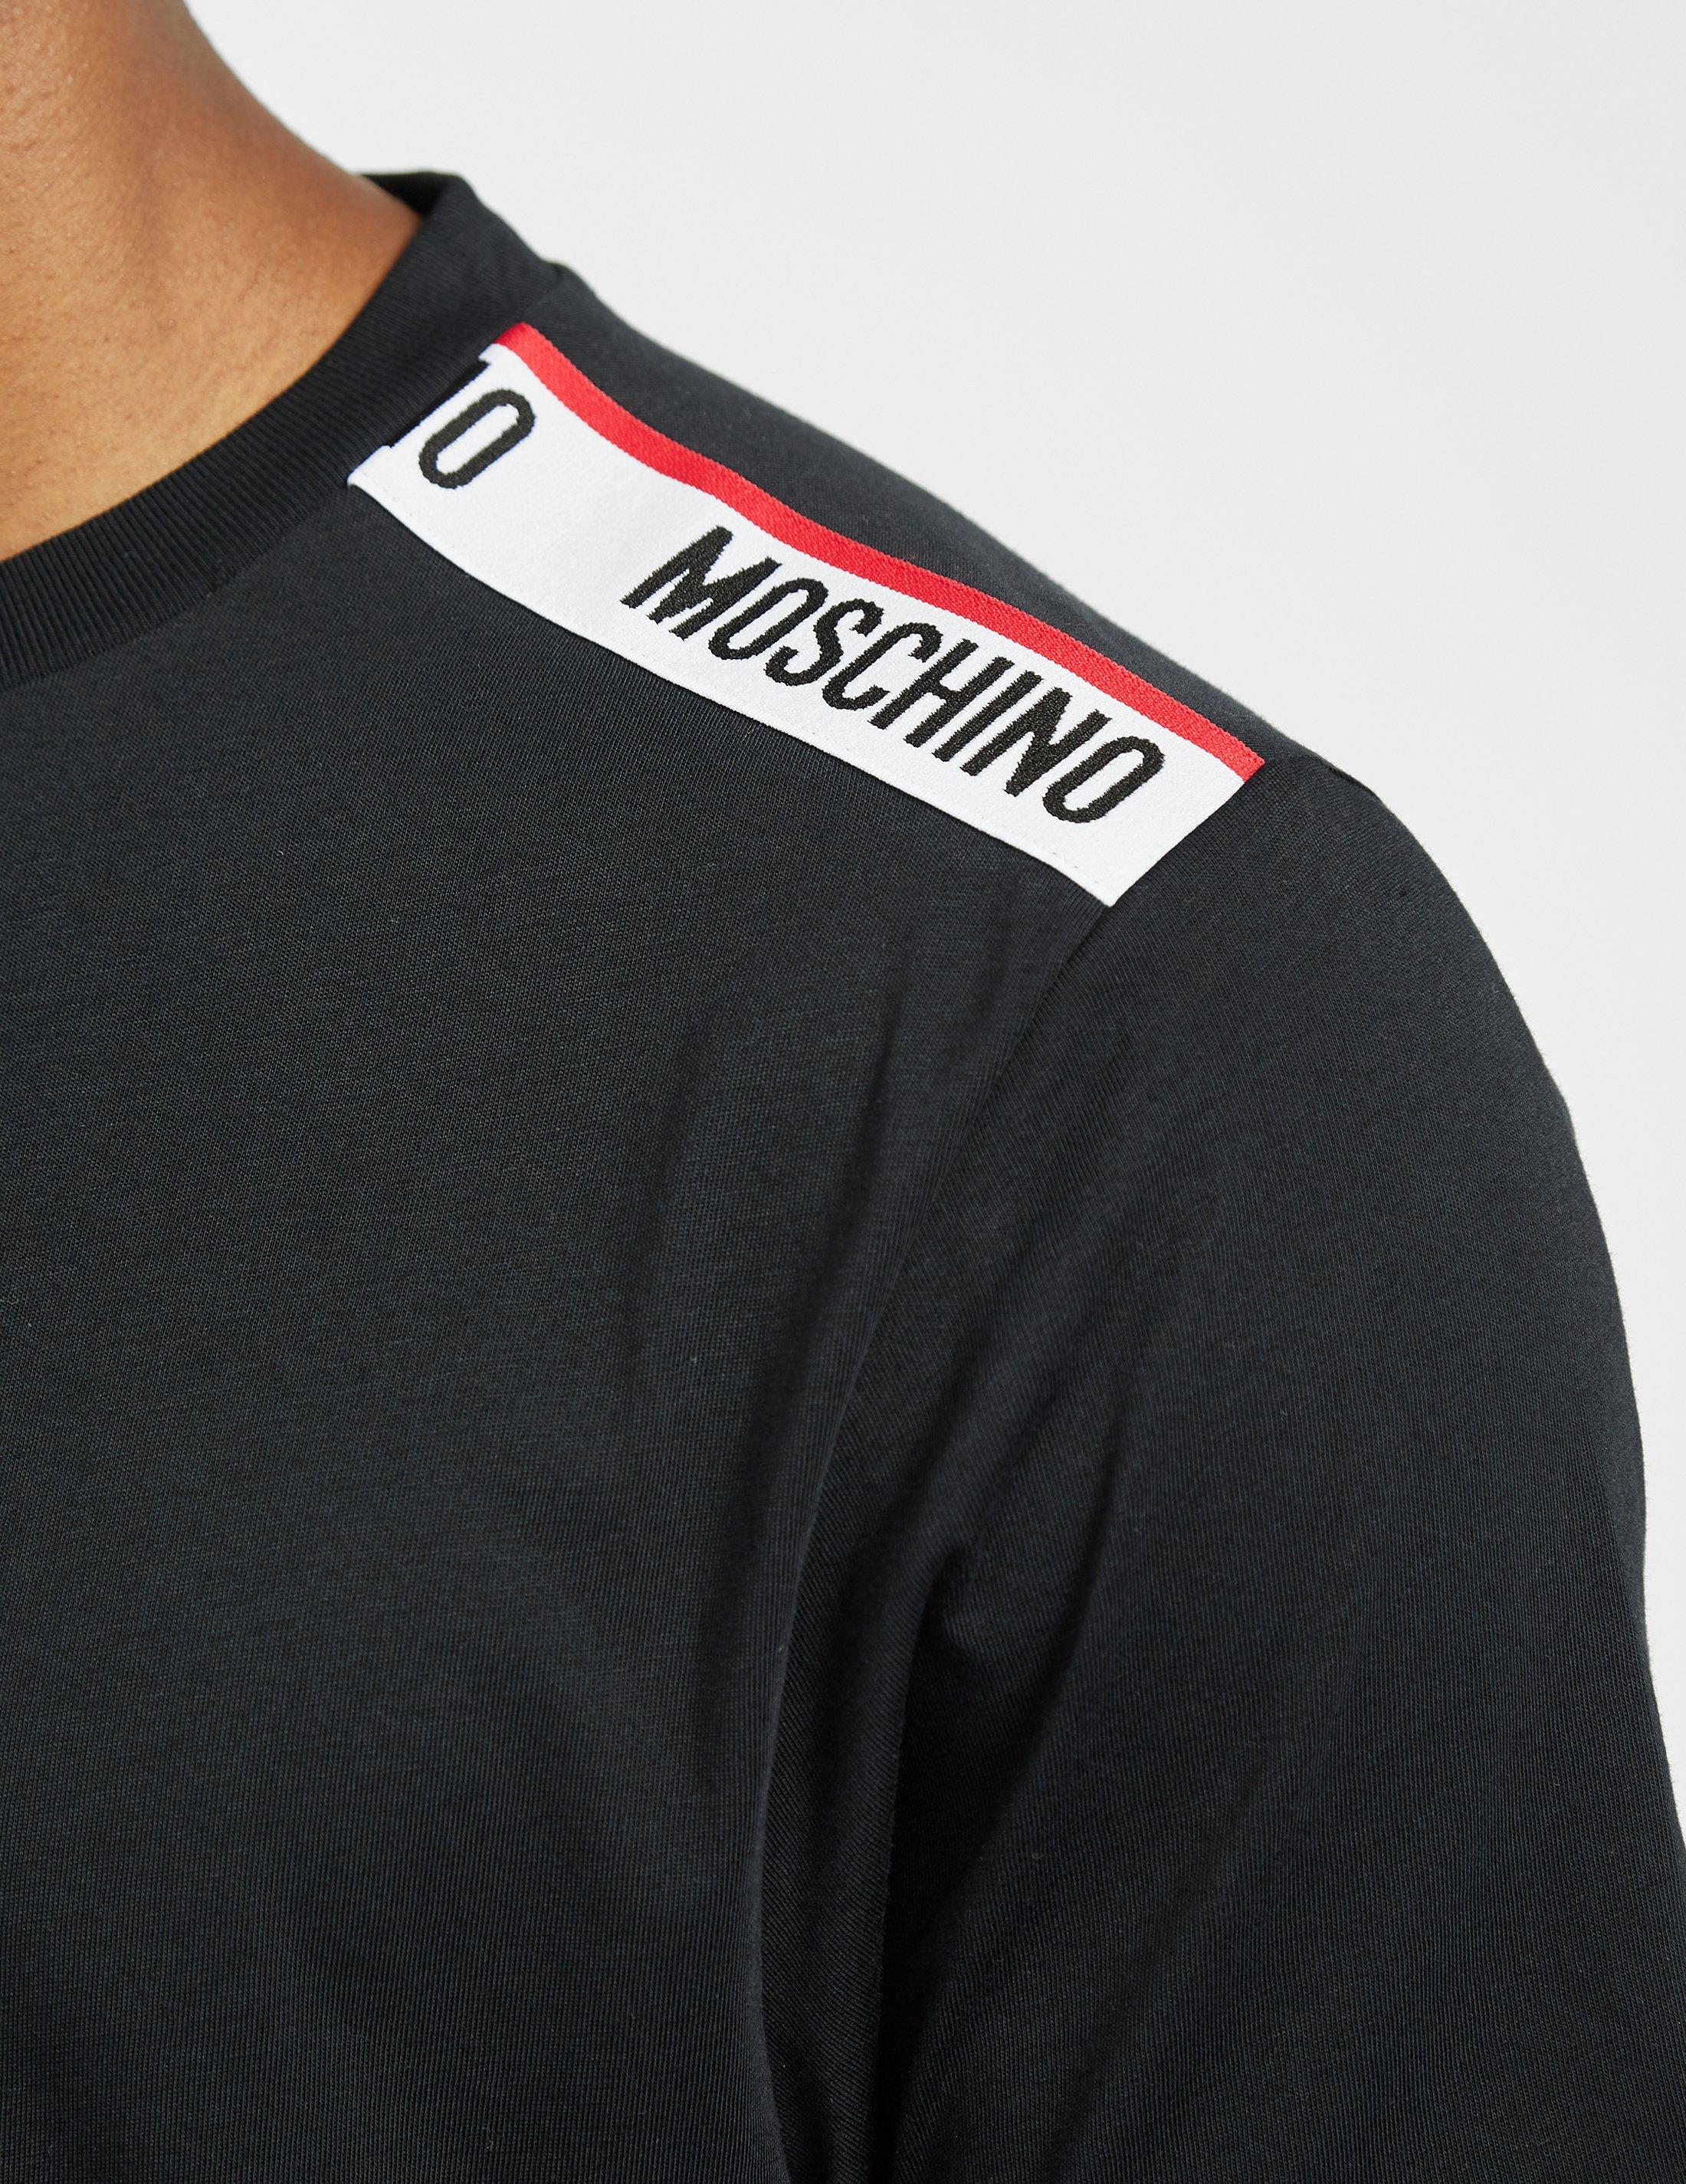 moschino black tape sweatshirt